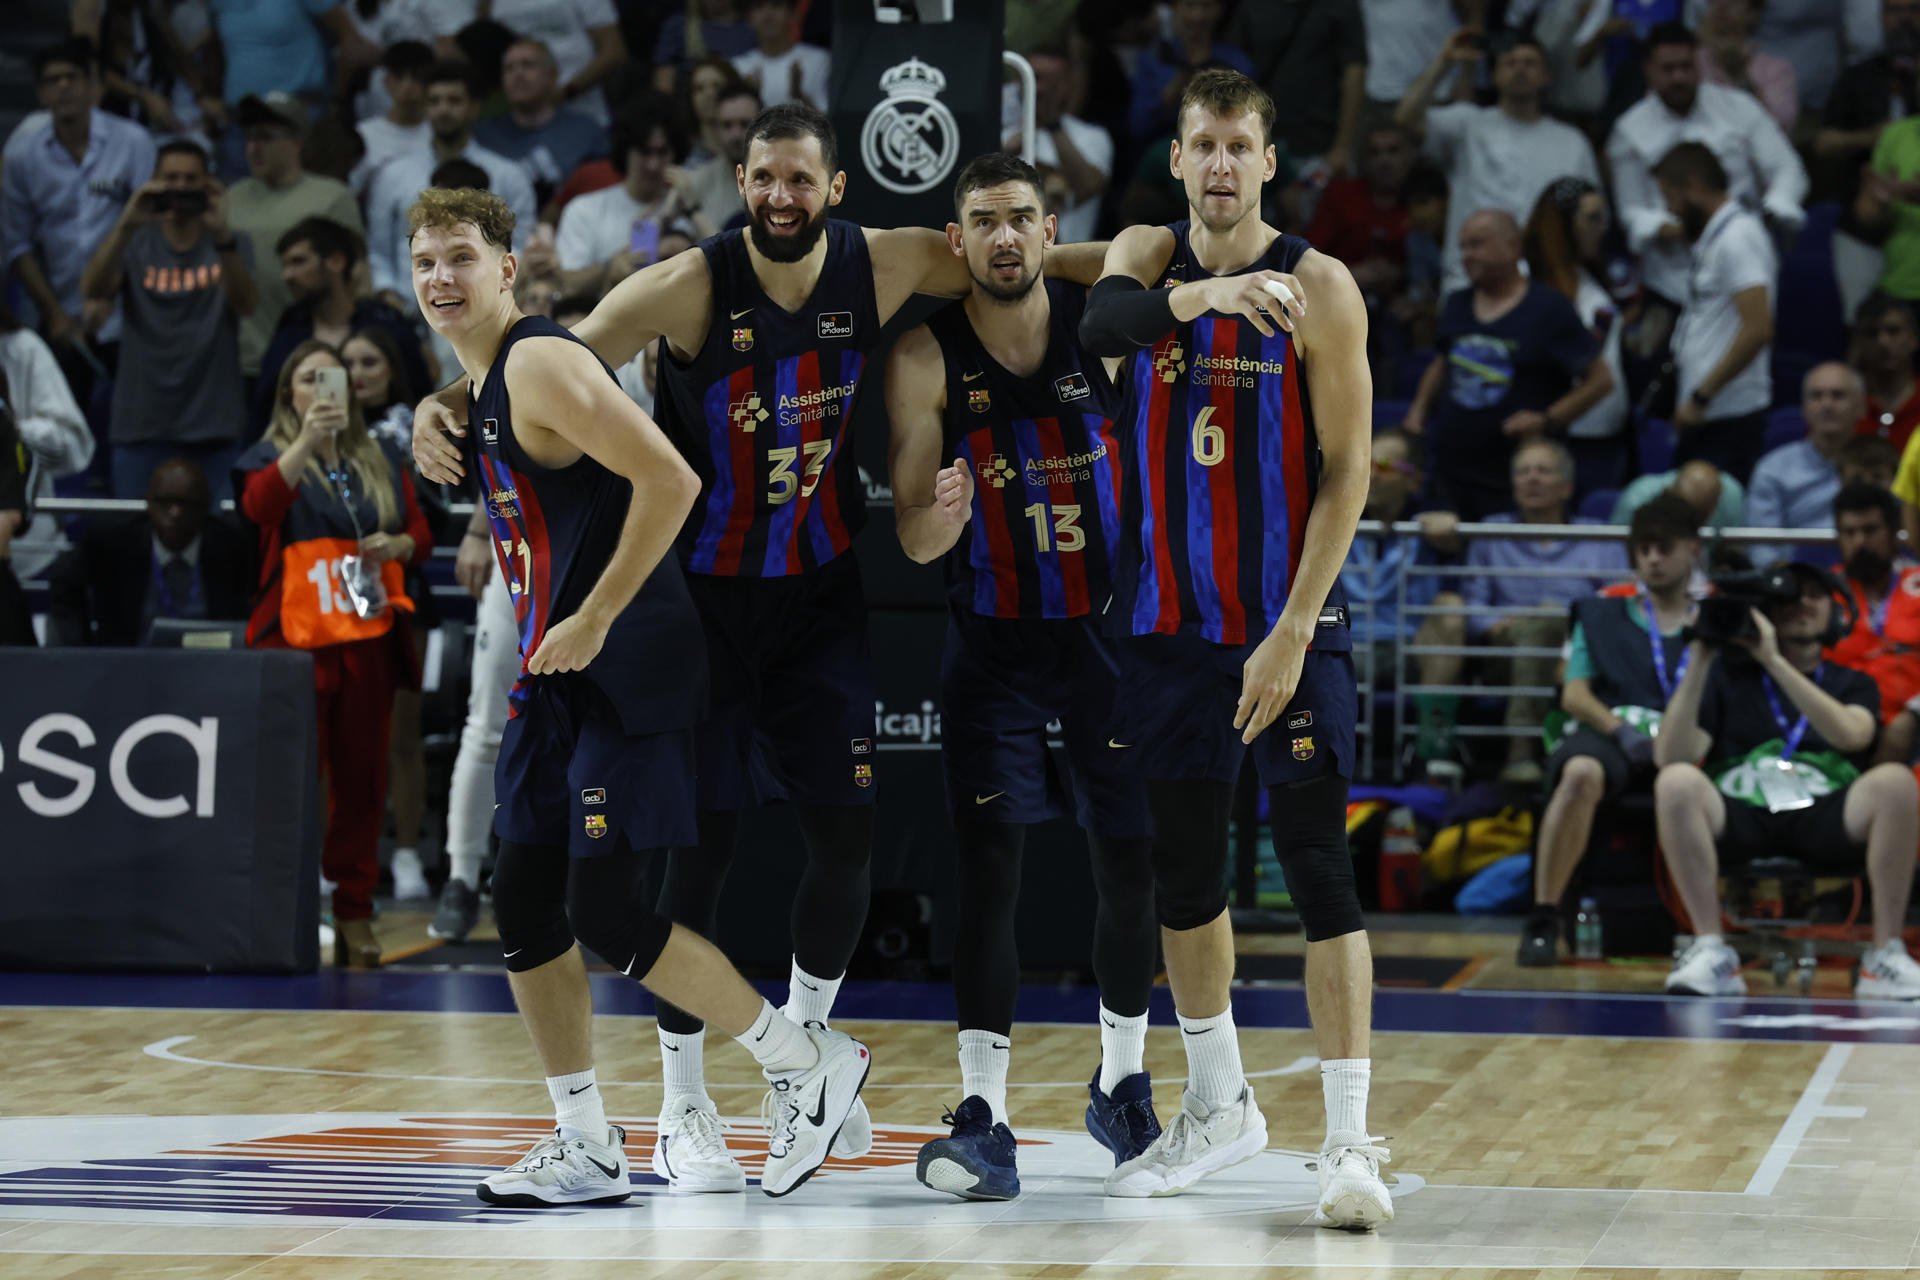 Superioritat absoluta del Barça de bàsquet a la final i 20è títol a la Lliga Endesa